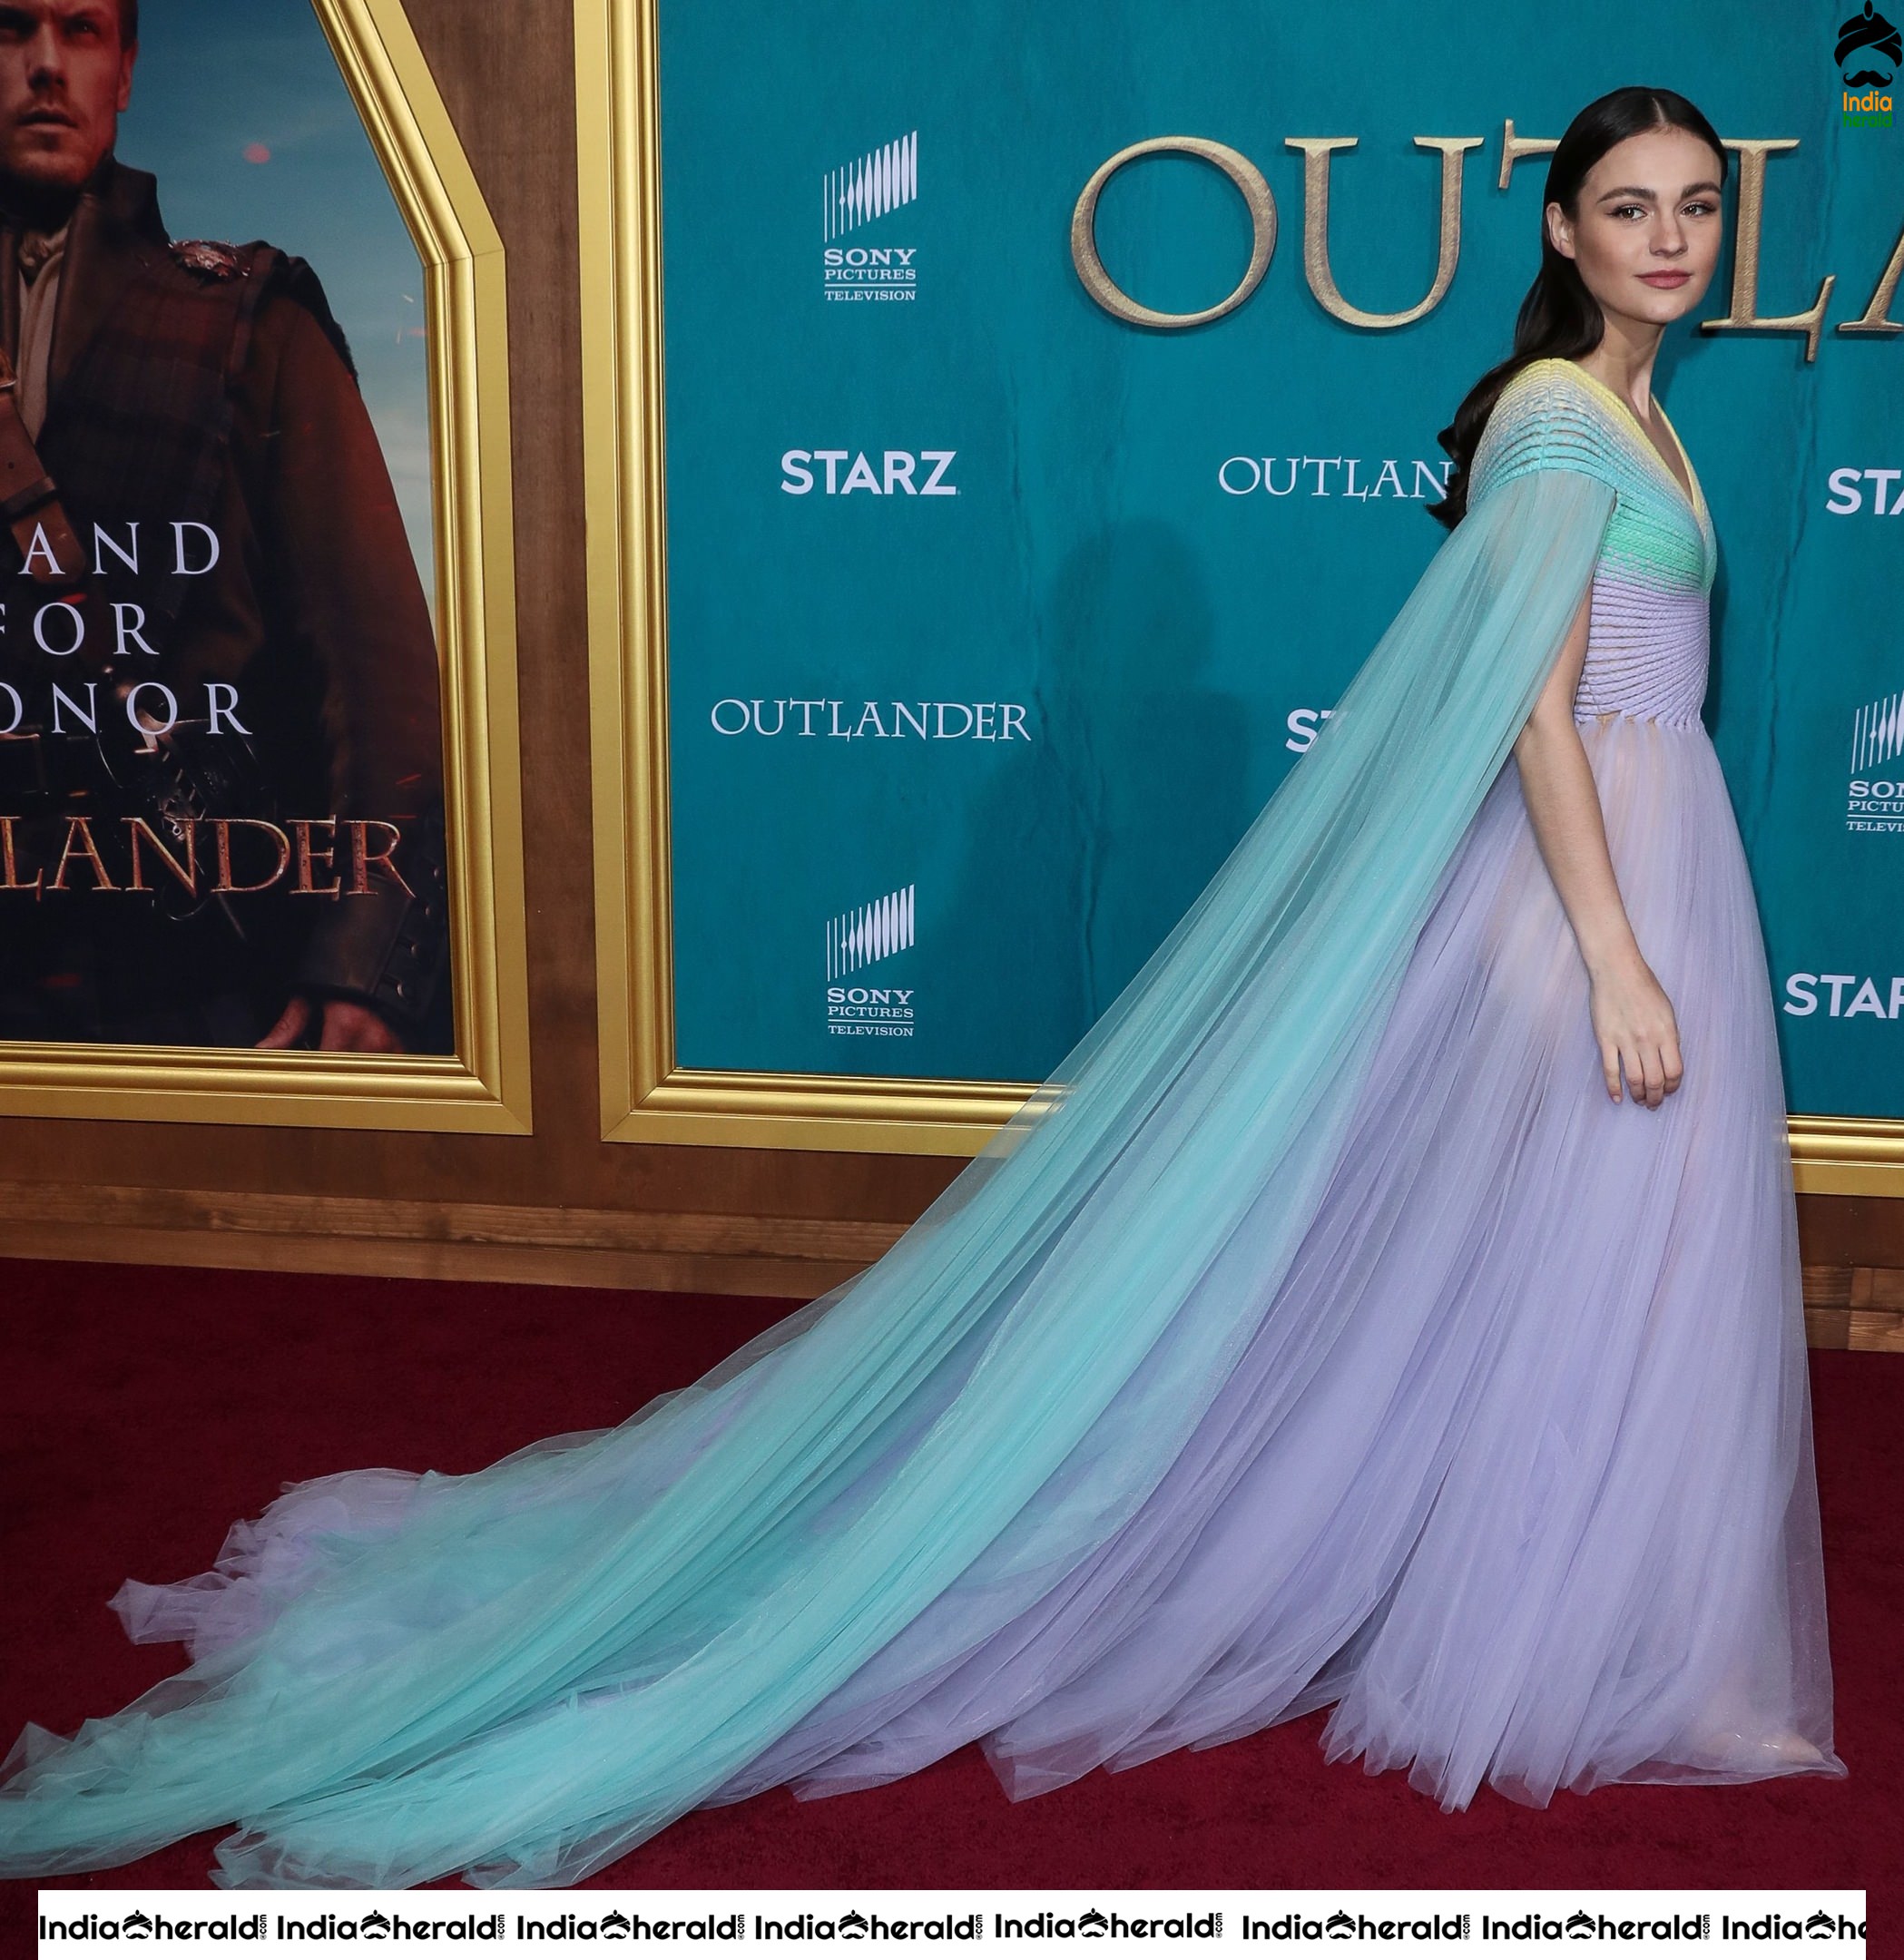 Sophie Skelton at Starz Premiere event for Outlander Season 5 in LA Set 1